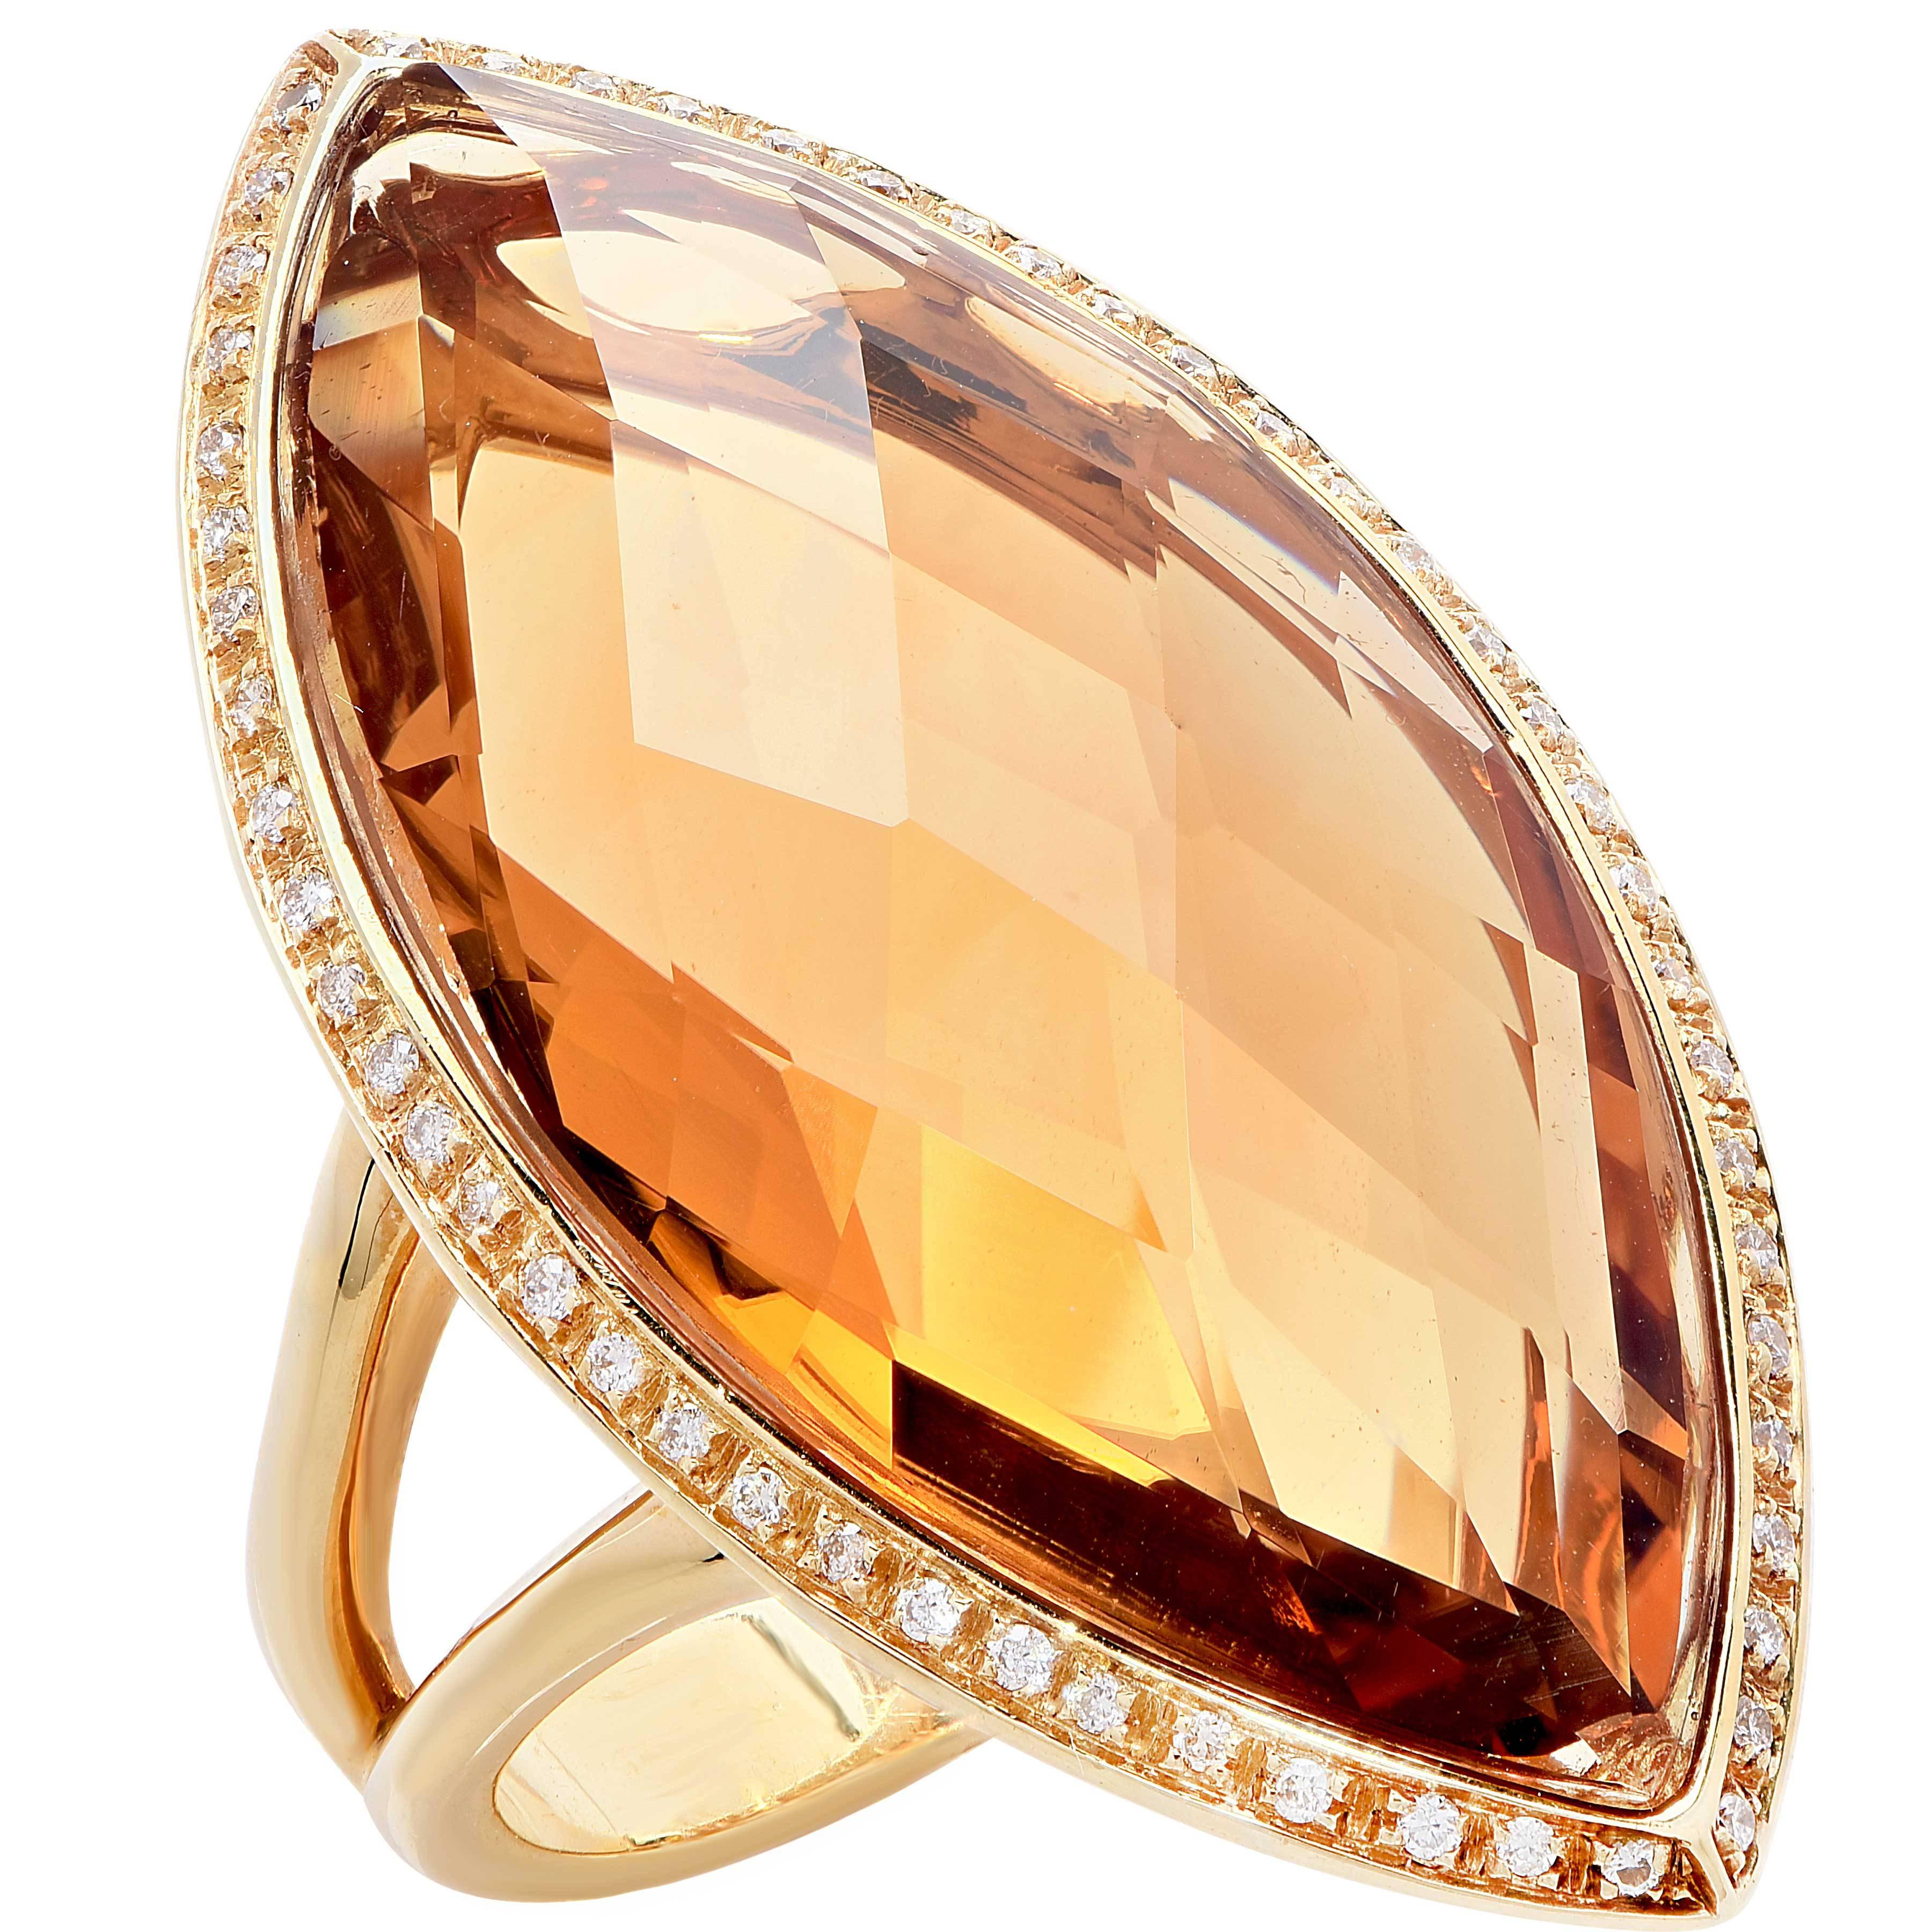 23 carat diamond price in india